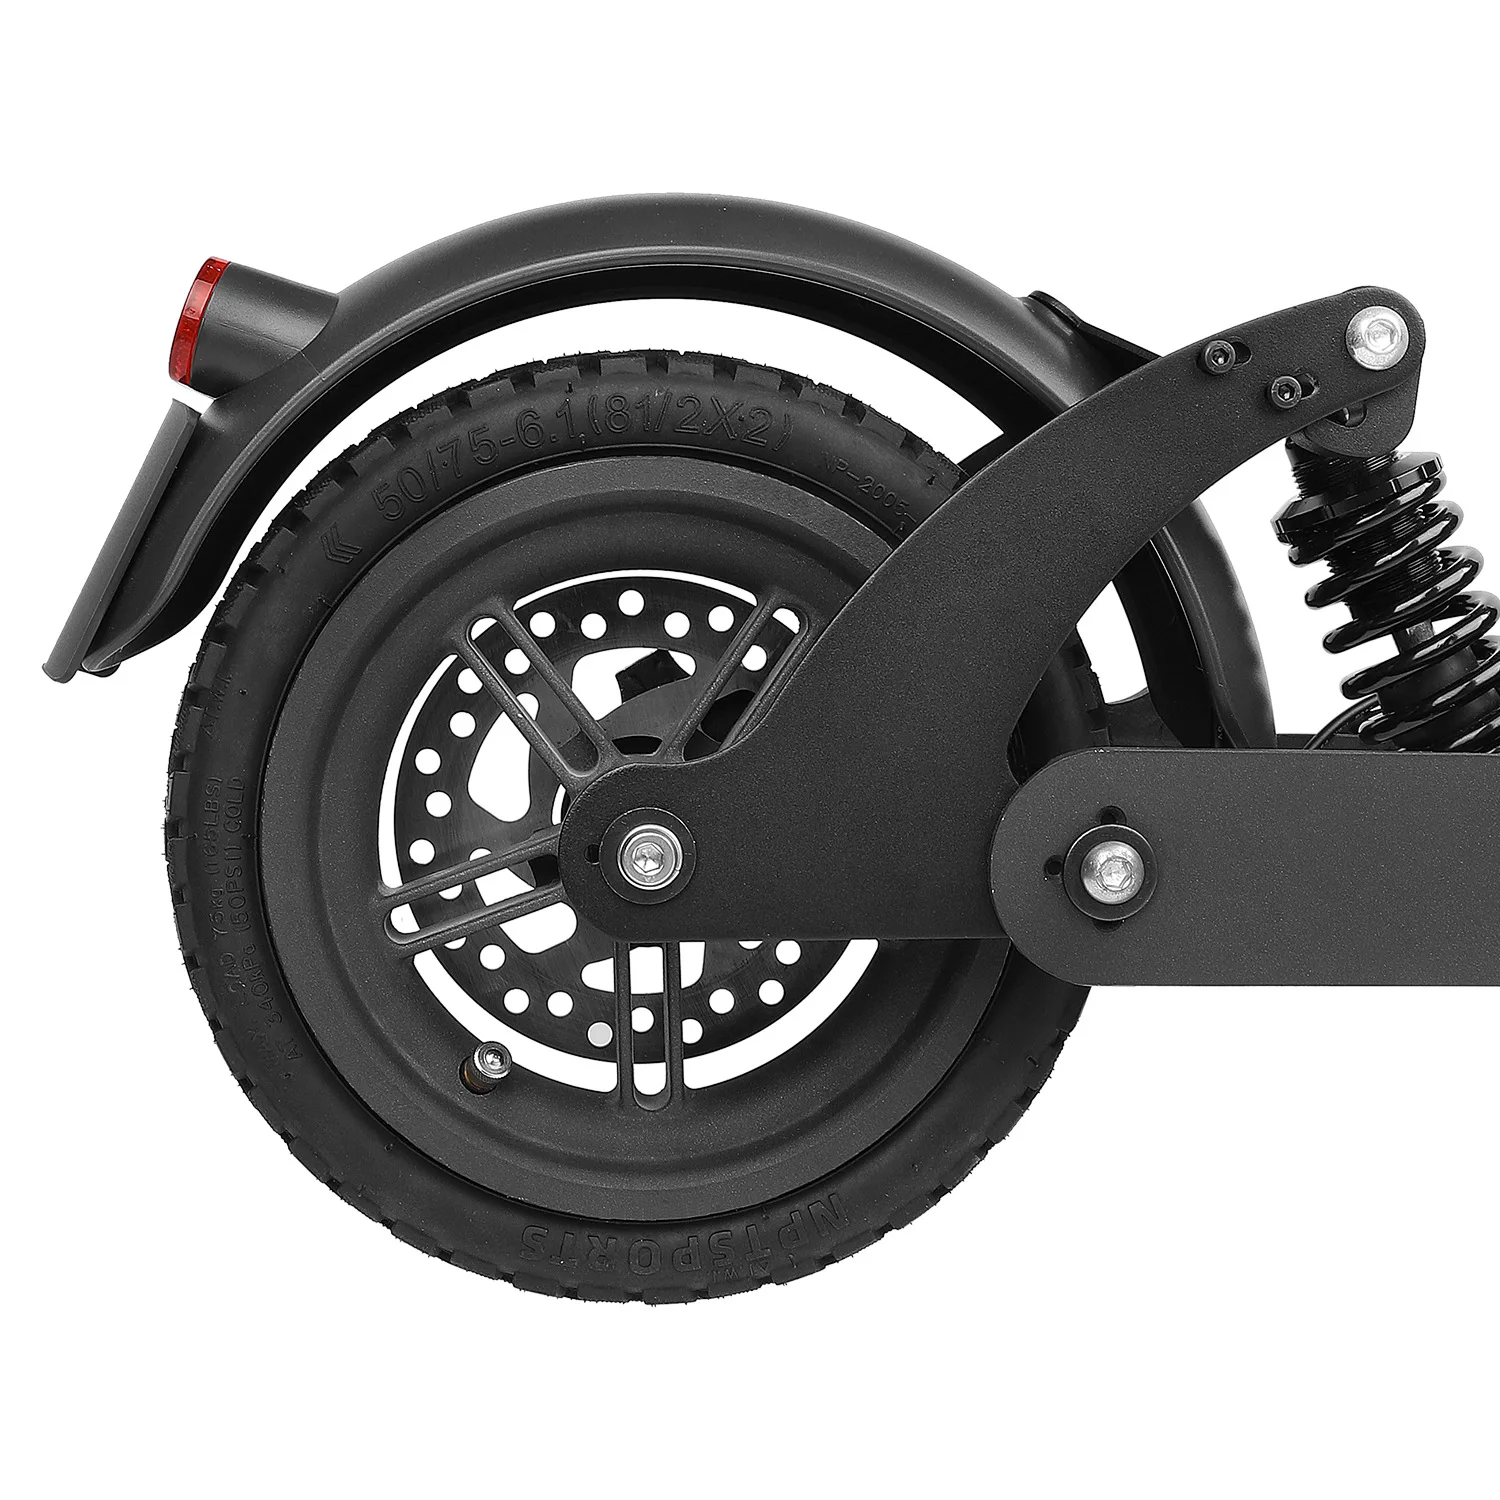 Внедорожные вакуумные шины для Xiaoimi Mi 3 1S Pro, Электрический скутер, утолщенные, противоскользящие, взрывозащищенные шины